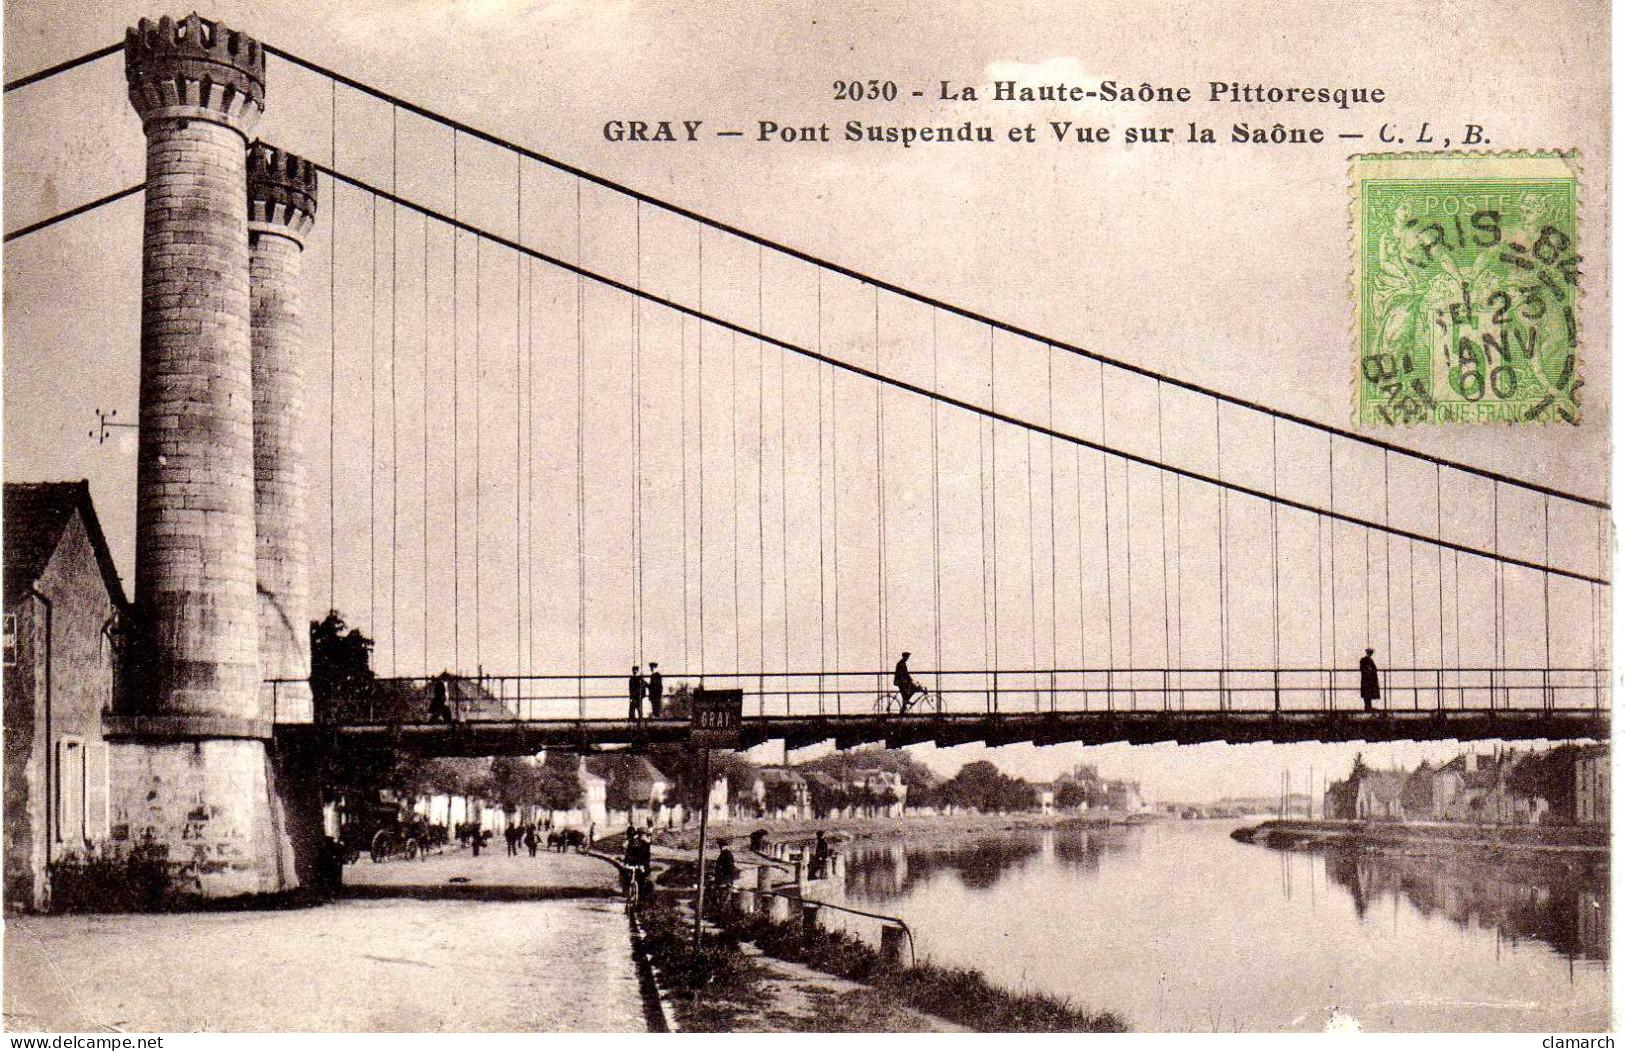 HTE SAONE-Gray-Pont Suspendu Et Vue Sur La Saone - CLB 2030 - Gray